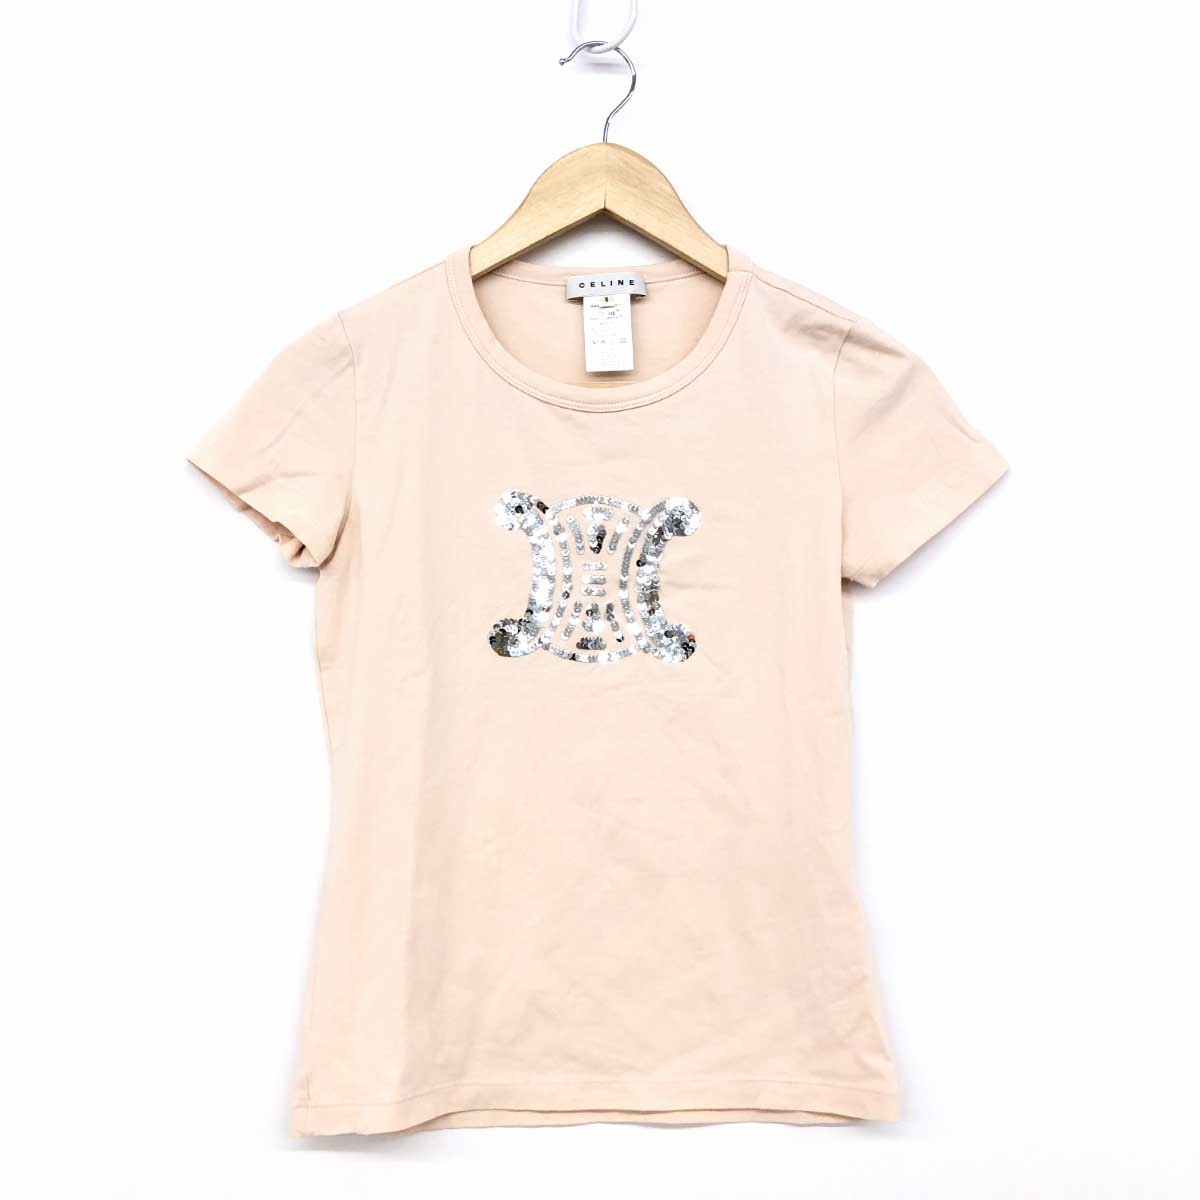 人気ブランドを - サイズM 半袖Tシャツ CELINE セリーヌ ネイビー×白